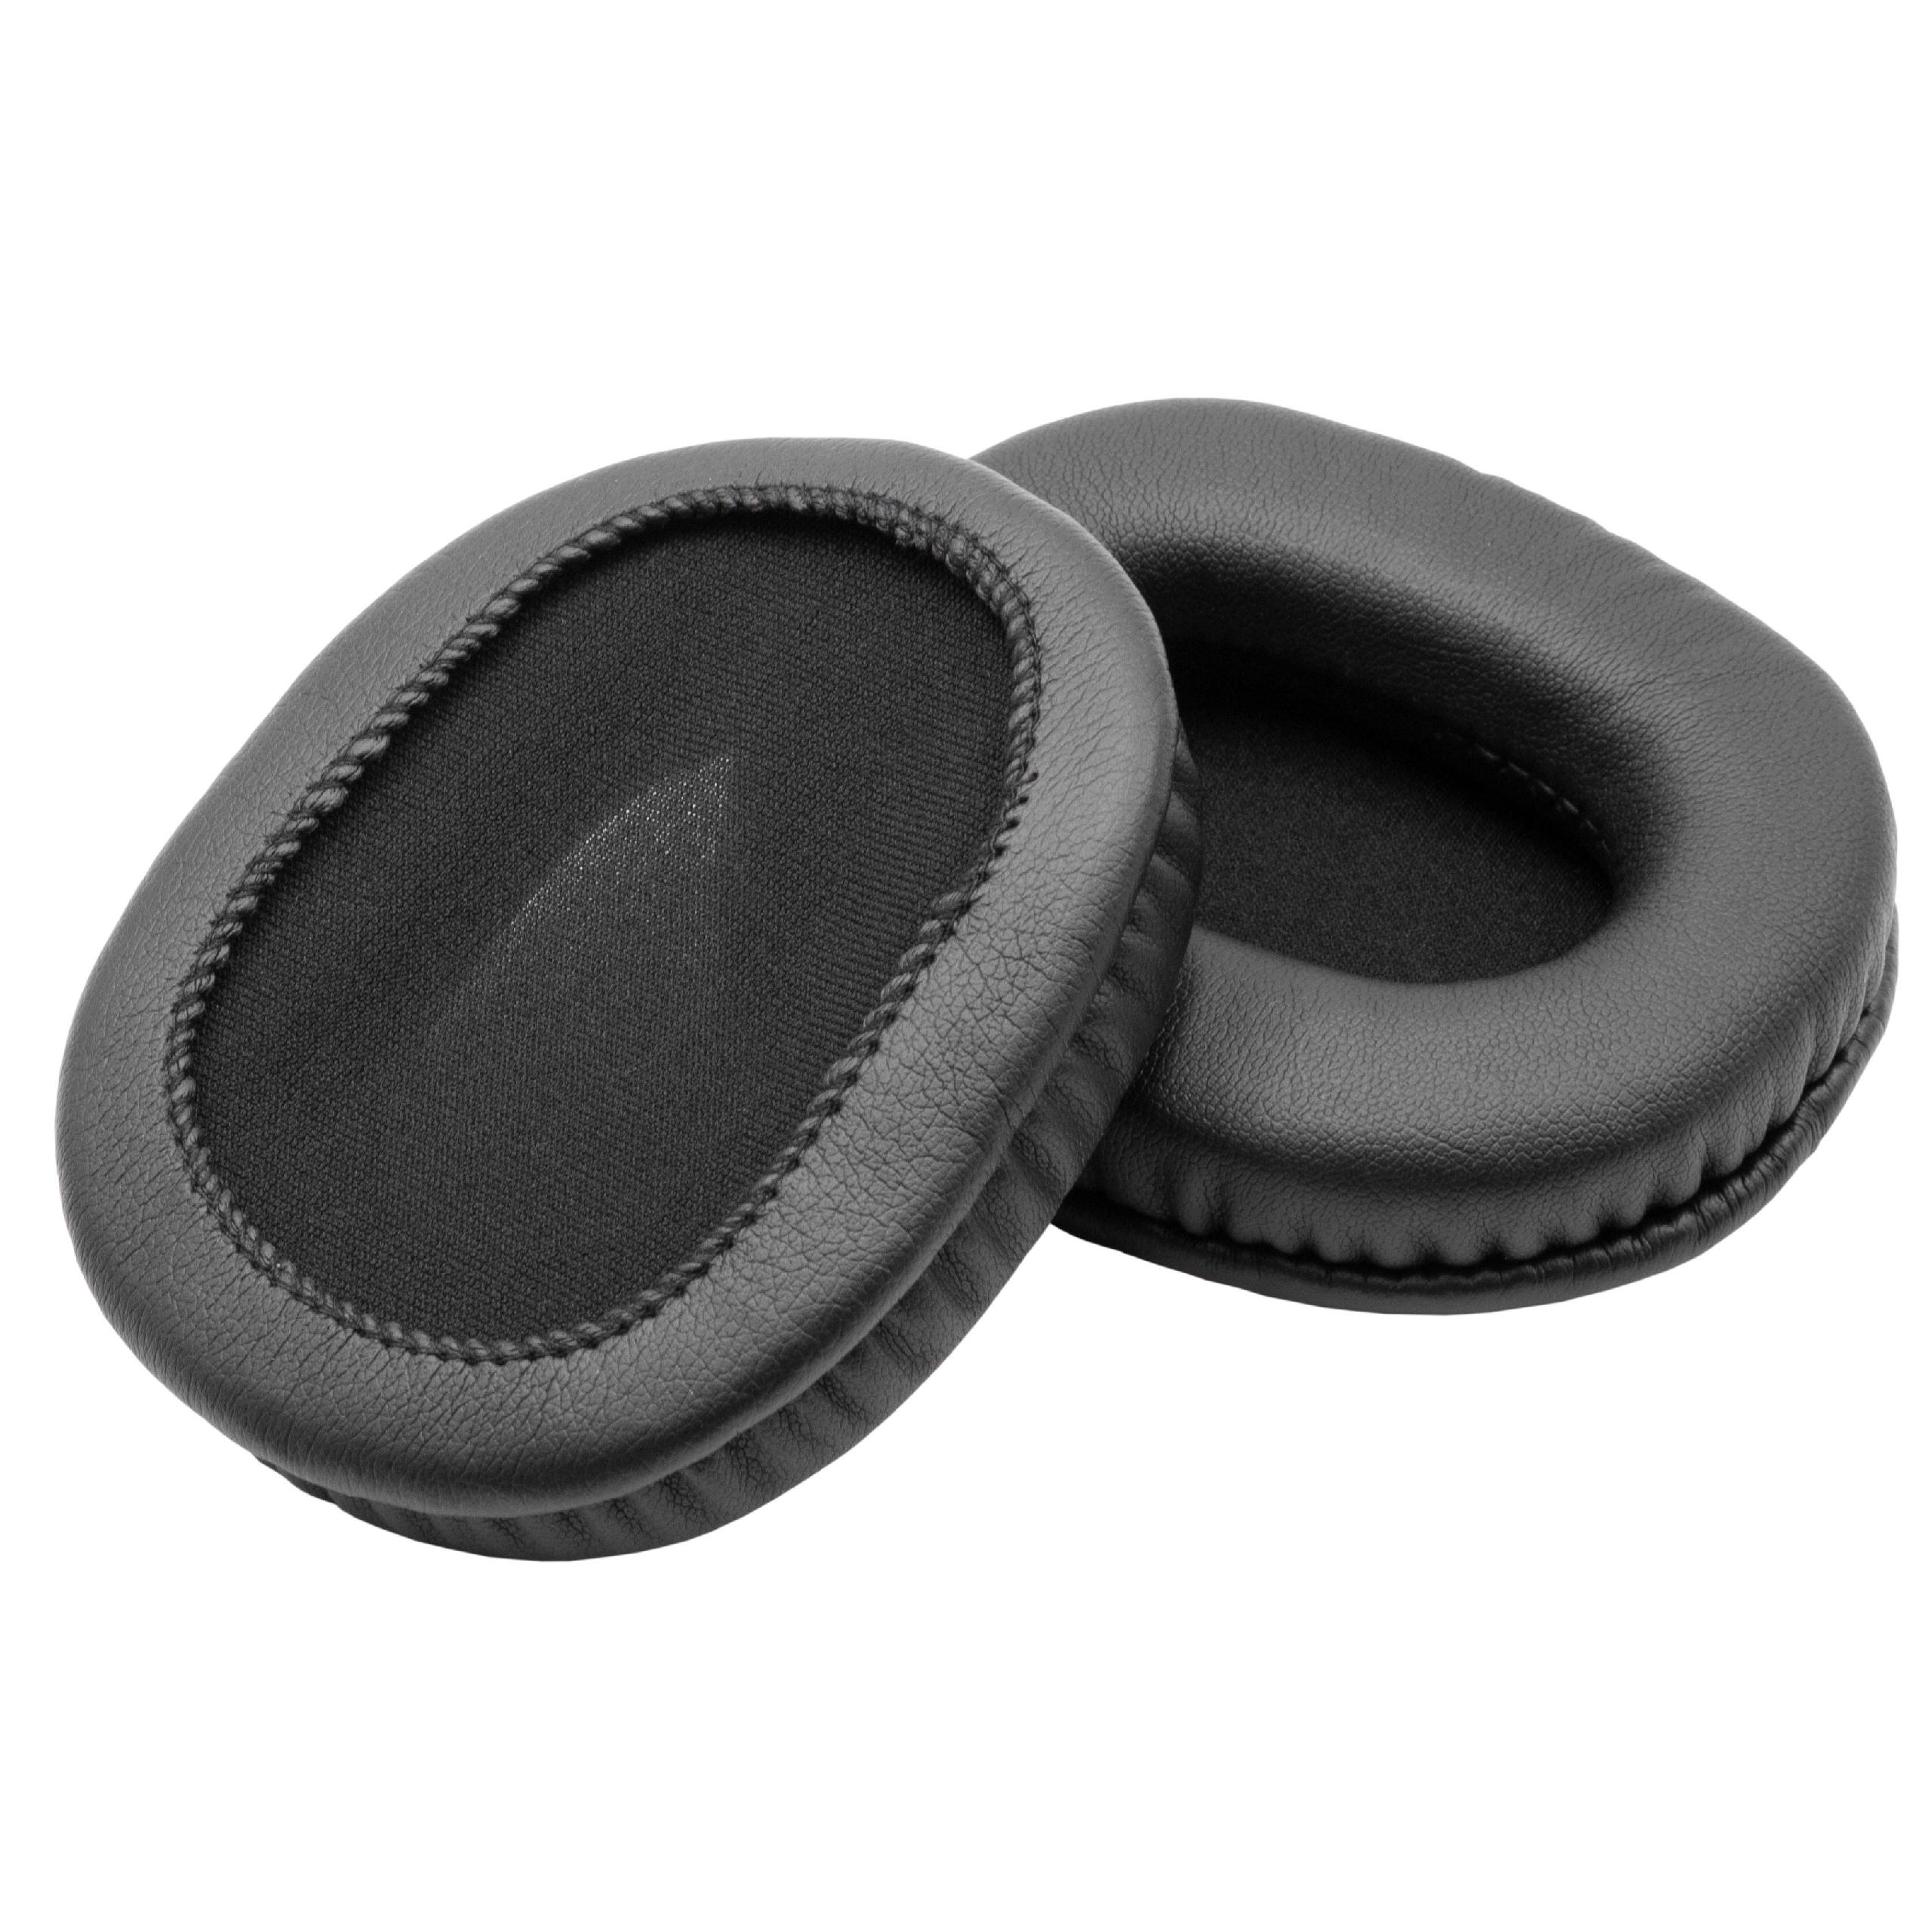 Ohrenpolster passend für Audio Technica ATH-M20 Kopfhörer u.a. - Polyurethan / Schaumstoff, 9,5 x 7,4 cm, 11 m